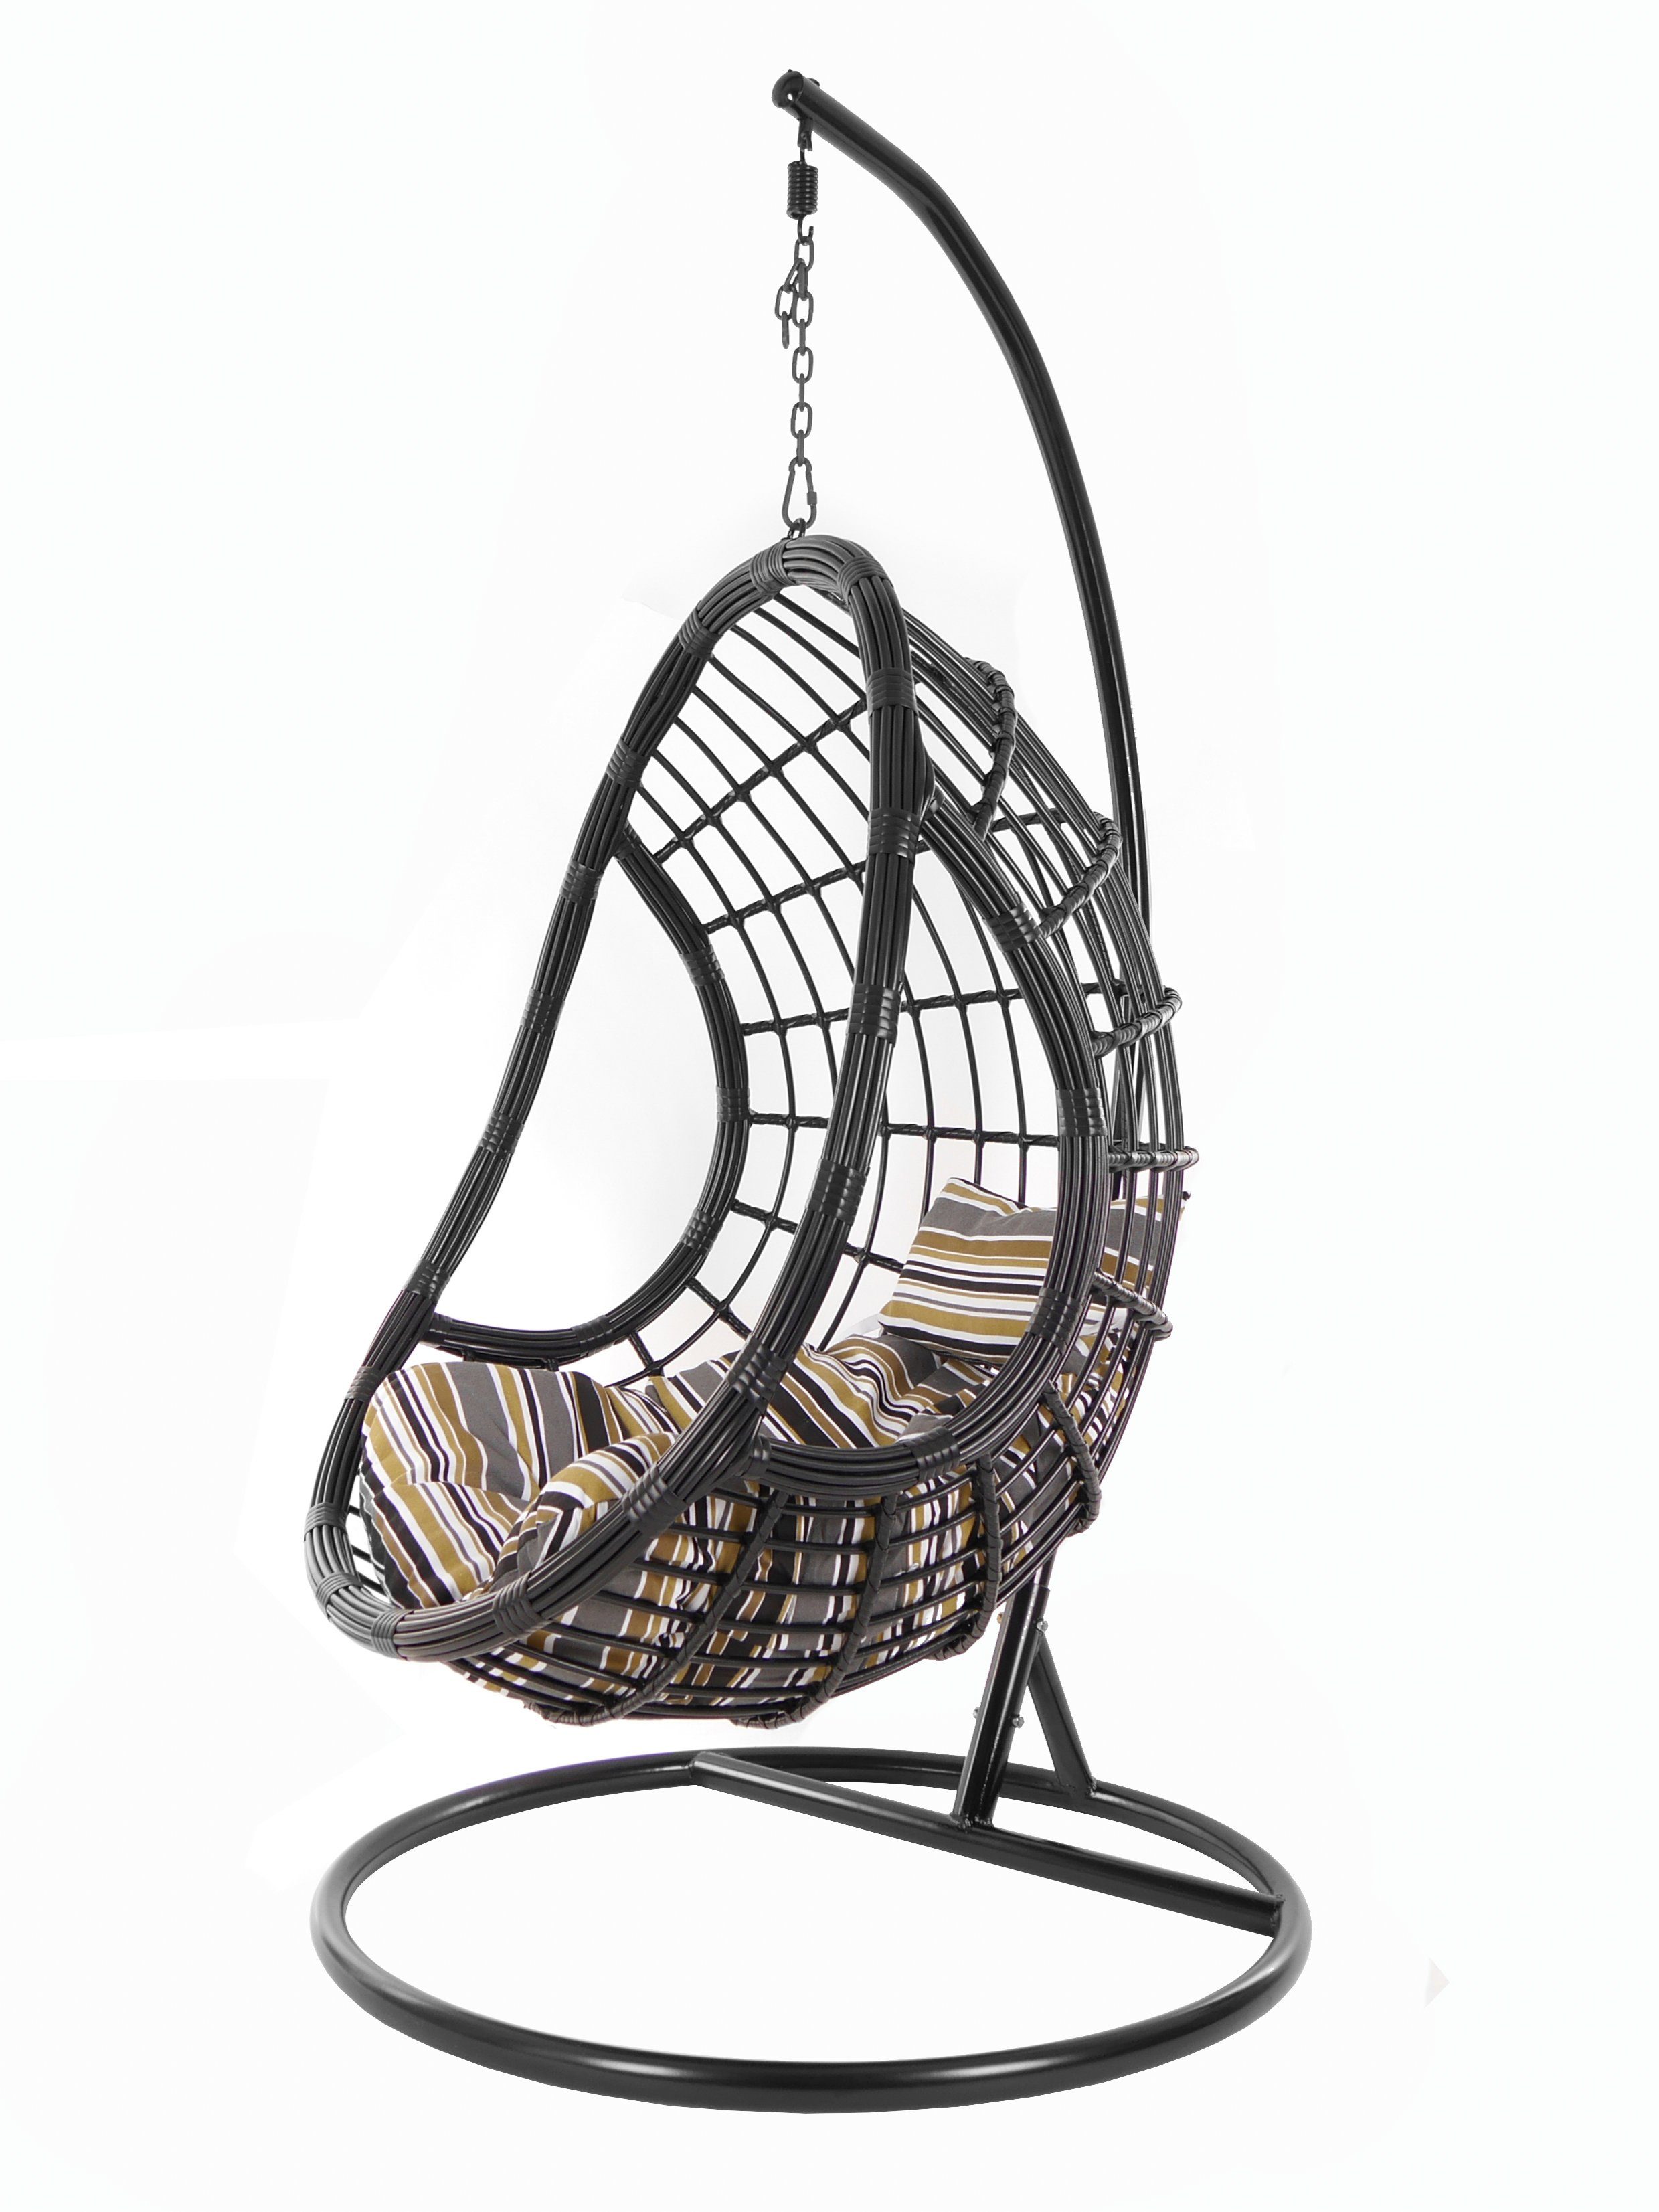 KIDEO Hängesessel PALMANOVA black, Swing Chair, schwarz, Loungemöbel, Hängesessel mit Gestell und Kissen, Schwebesessel, edles Design